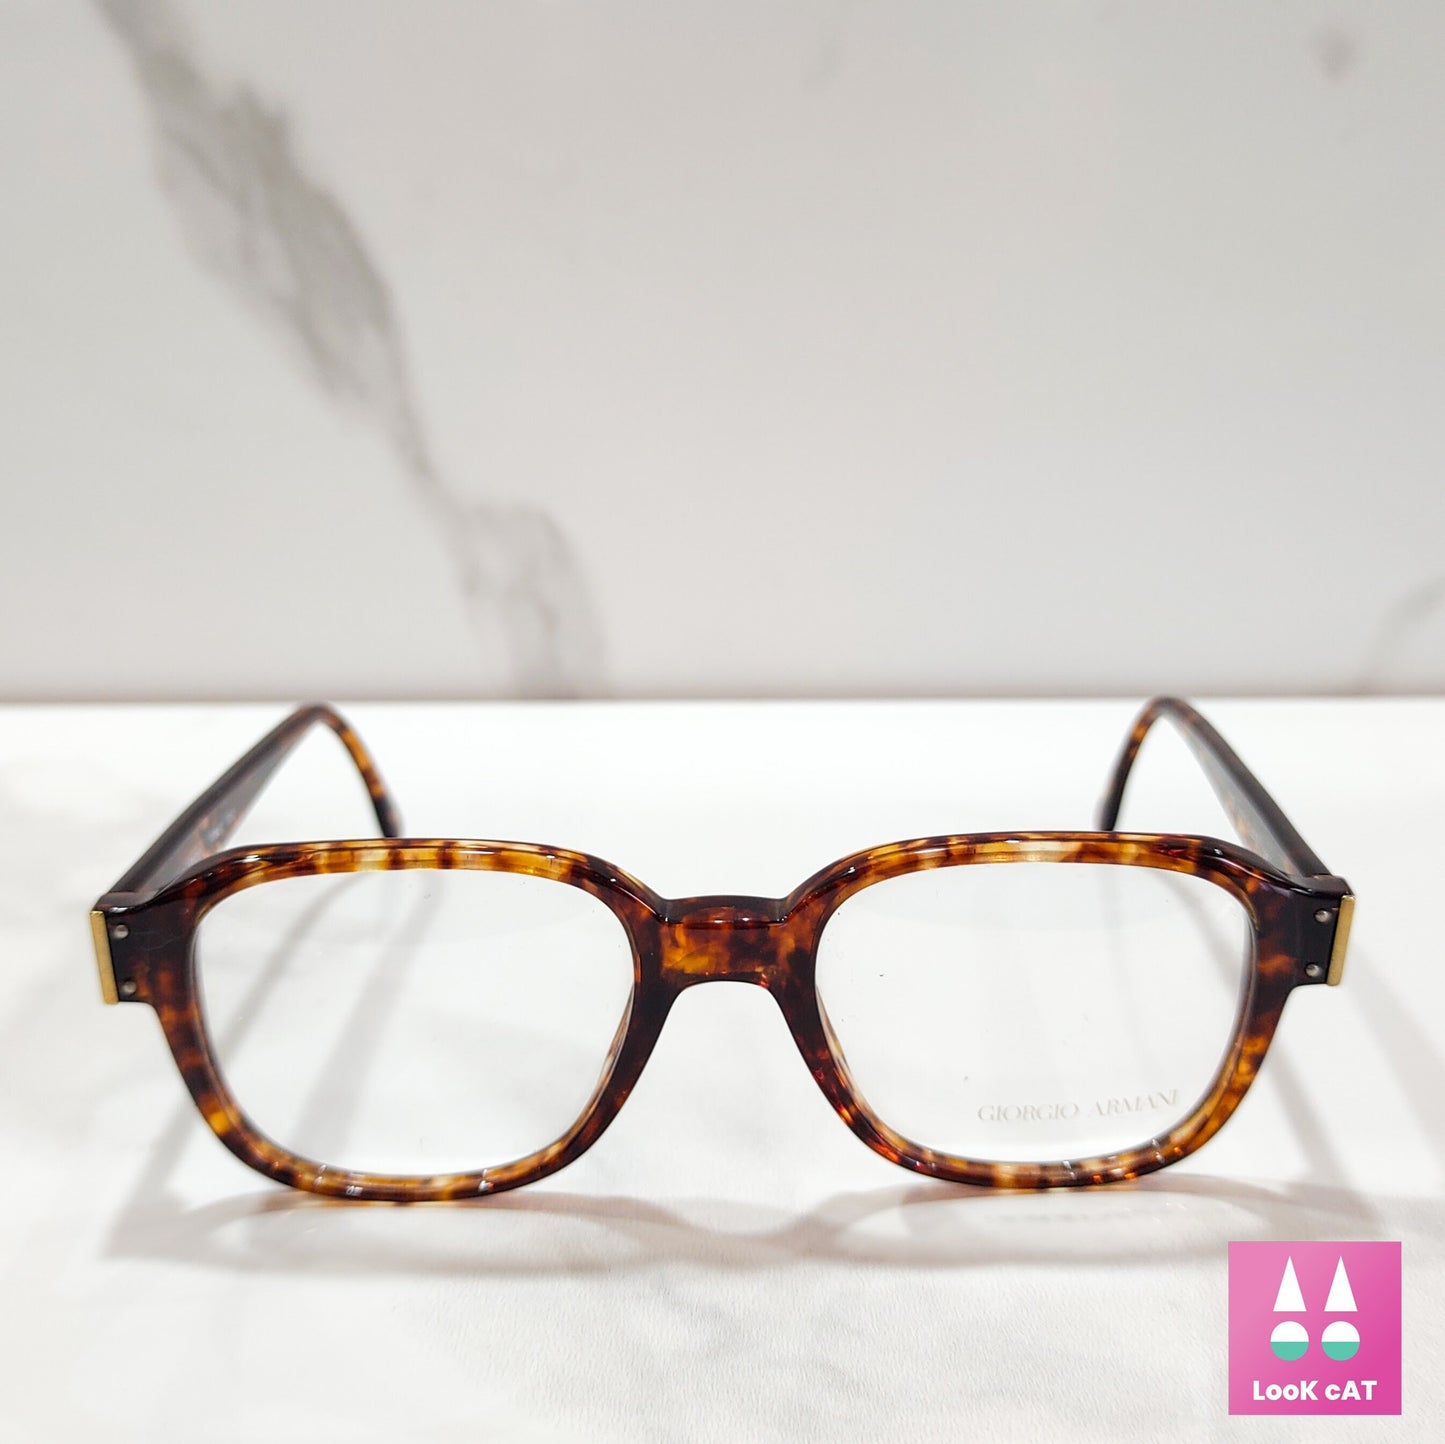 Occhiali da vista Giorgio Armani 313 montatura lunetta tonalità brille pantos occhiali vintage anni '80 realizzati in Italia